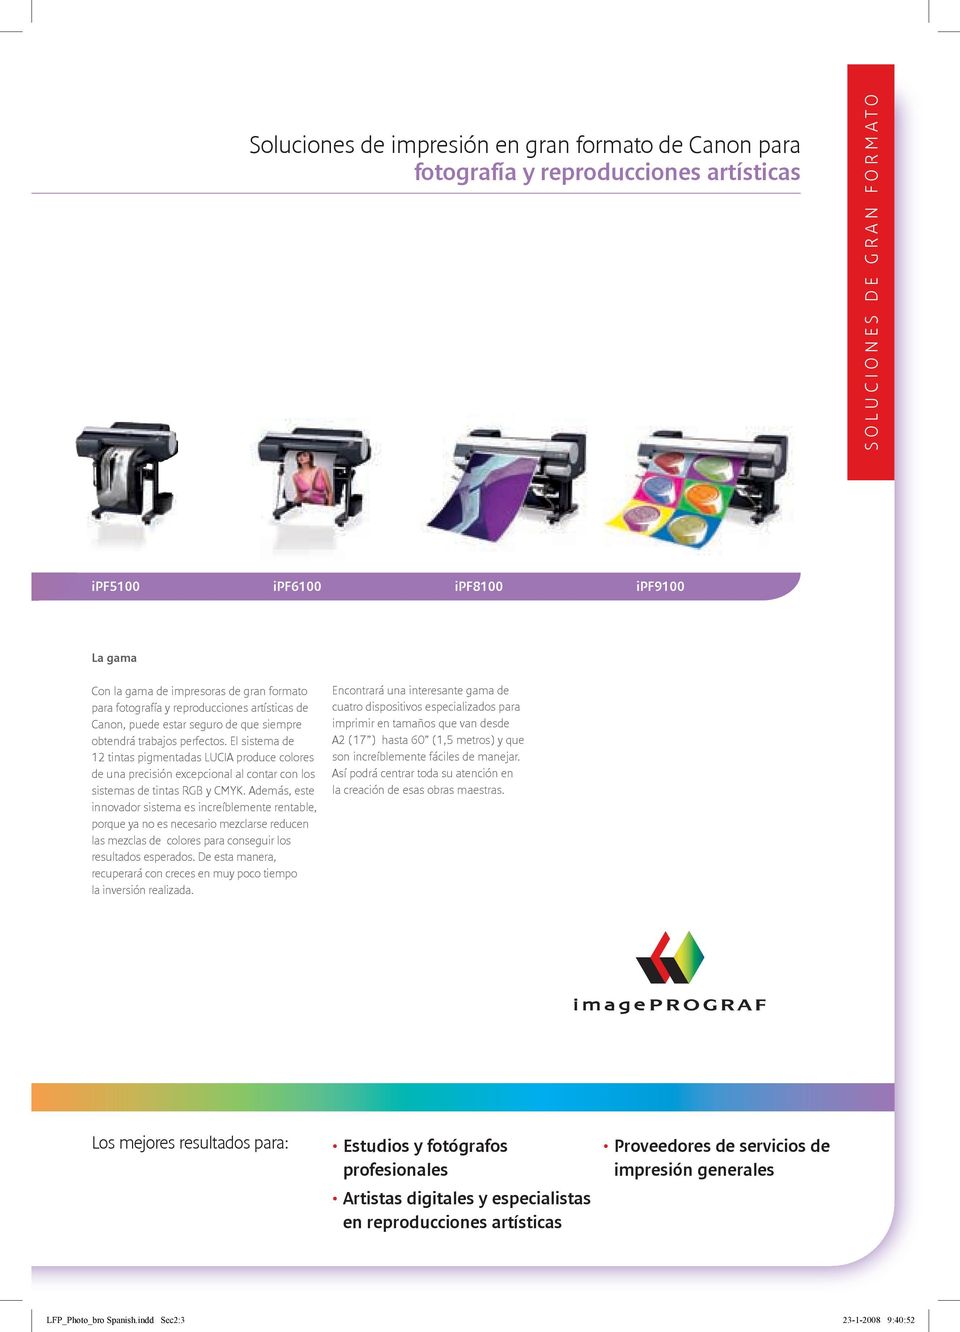 El sistema de 12 tintas pigmentadas LUCIA produce colores de una precisión excepcional al contar con los sistemas de tintas RGB y CMYK.